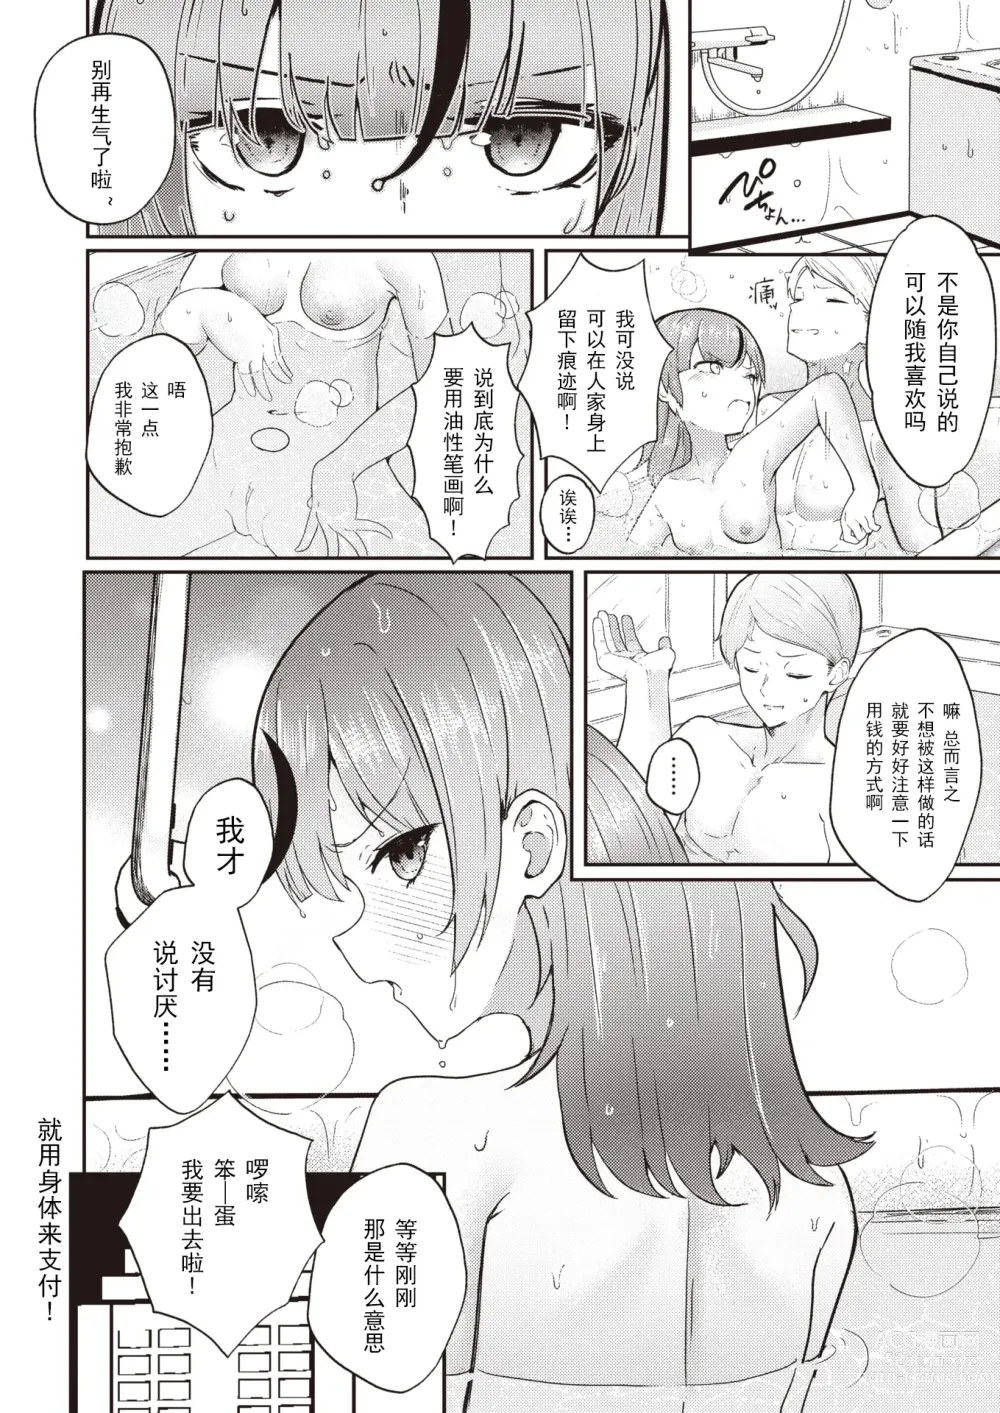 Page 26 of manga 支払いは身体で!